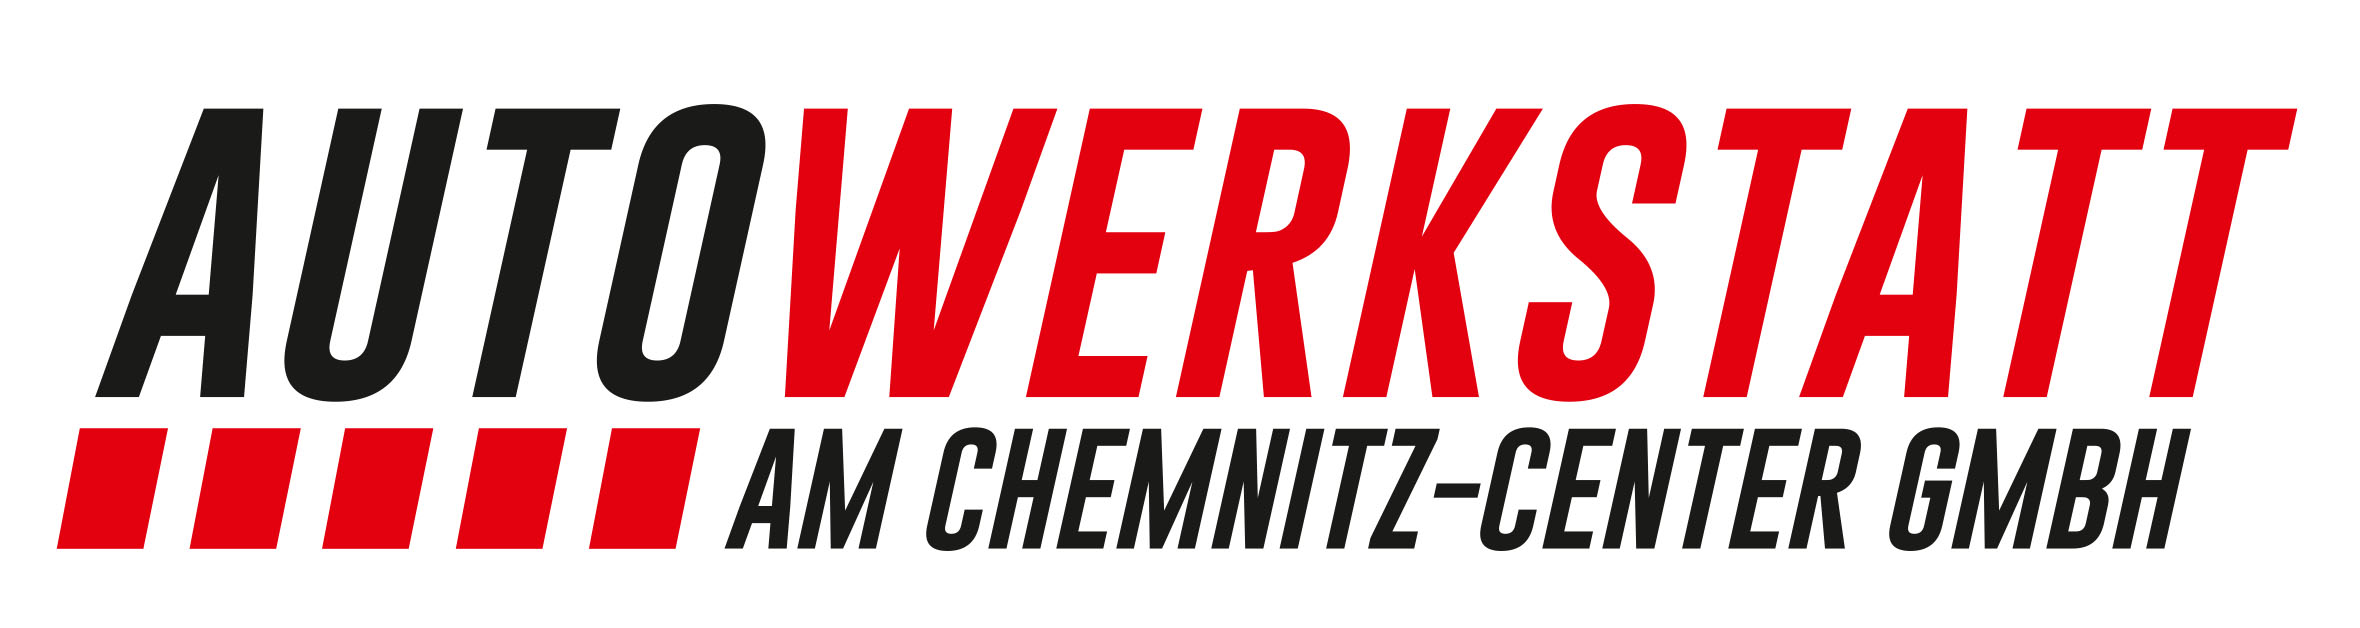 Autowerkstatt am Chemnitz-Center GmbH logo